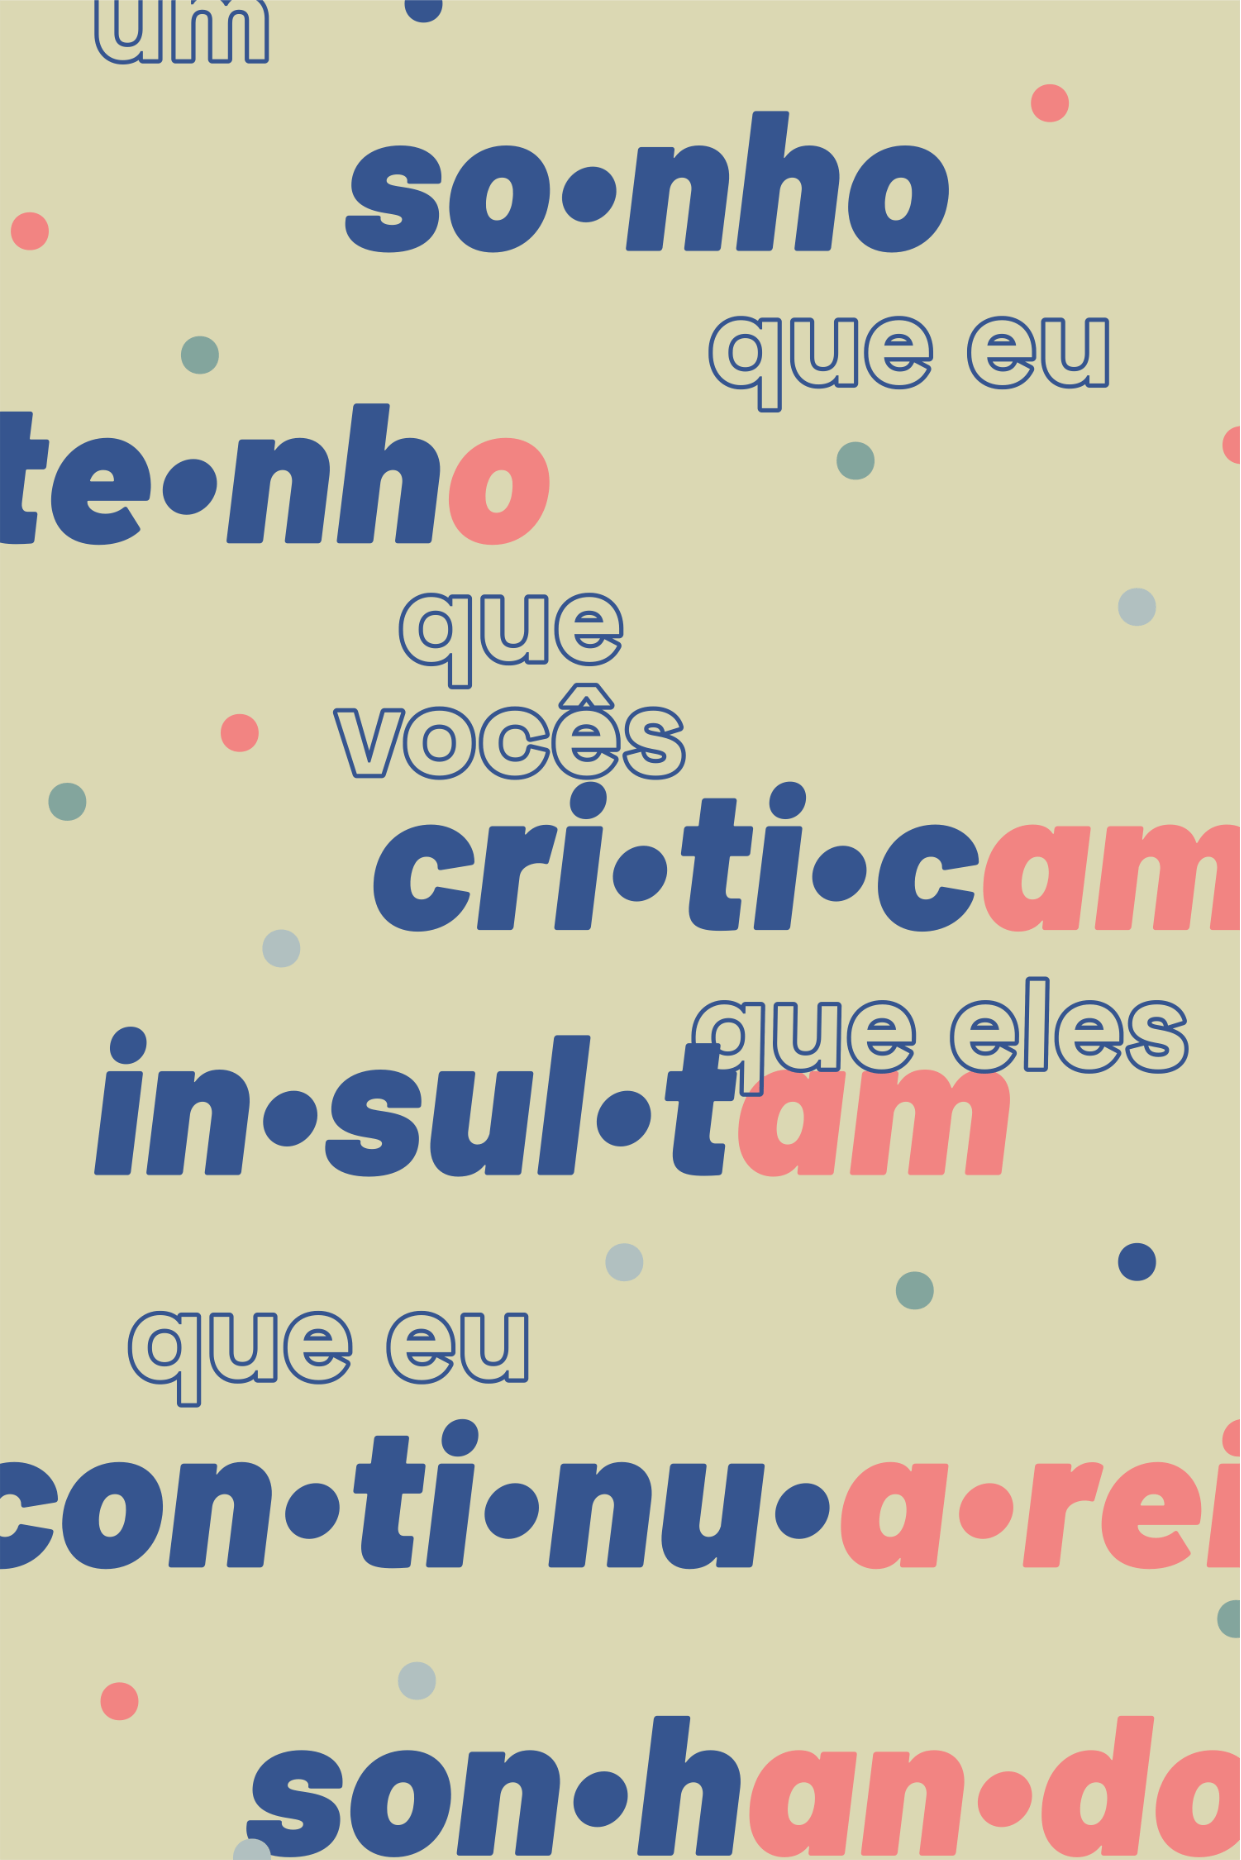 a poster that reads "um sonho que eu tenho que vocês criticam, que eles insultam, que eu continuarei sonhando" in Portuguese